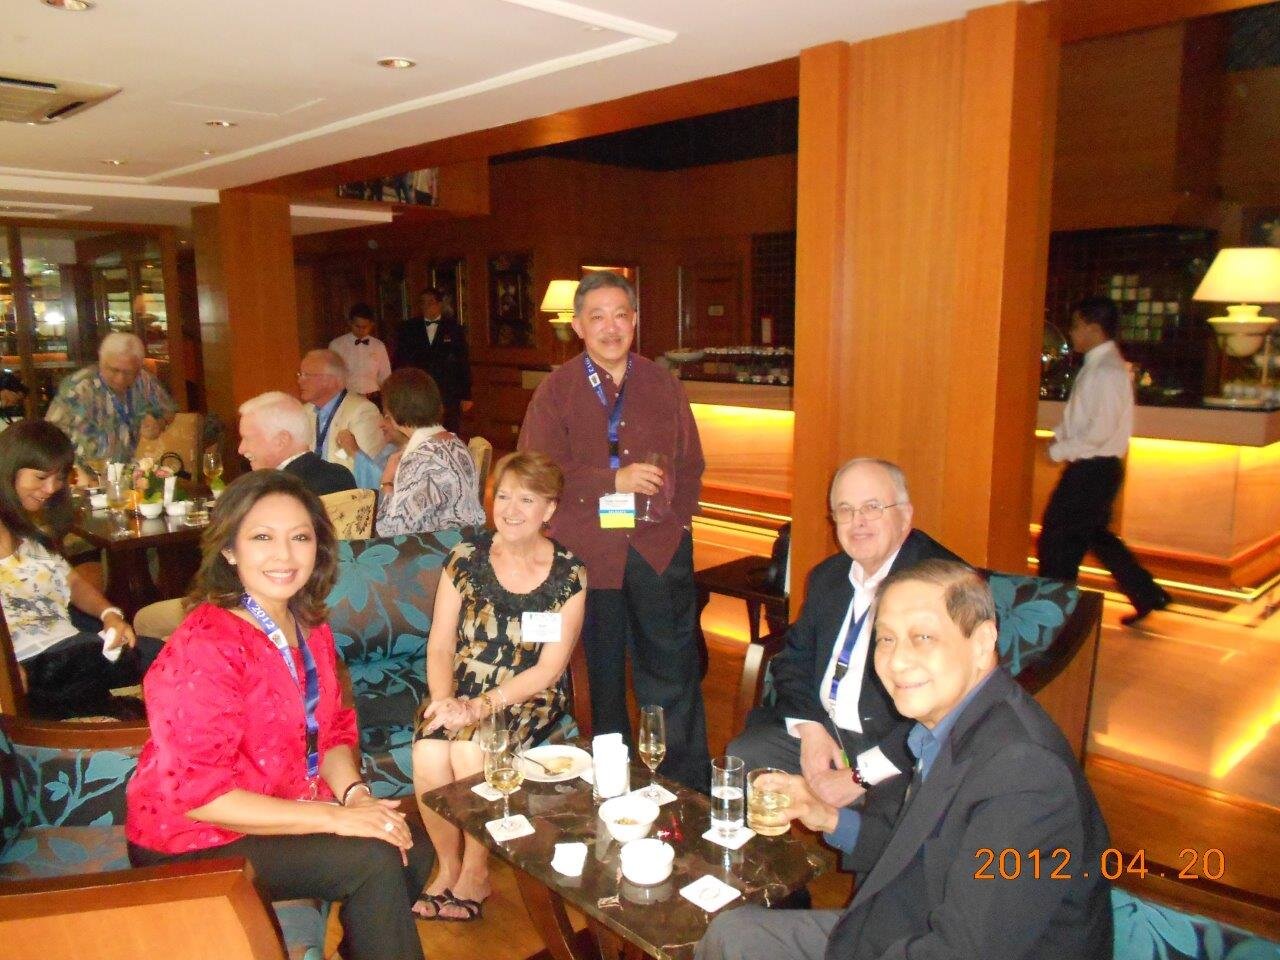 2012: PATA Annual Summit in Kuala Lumpur, Malaysia